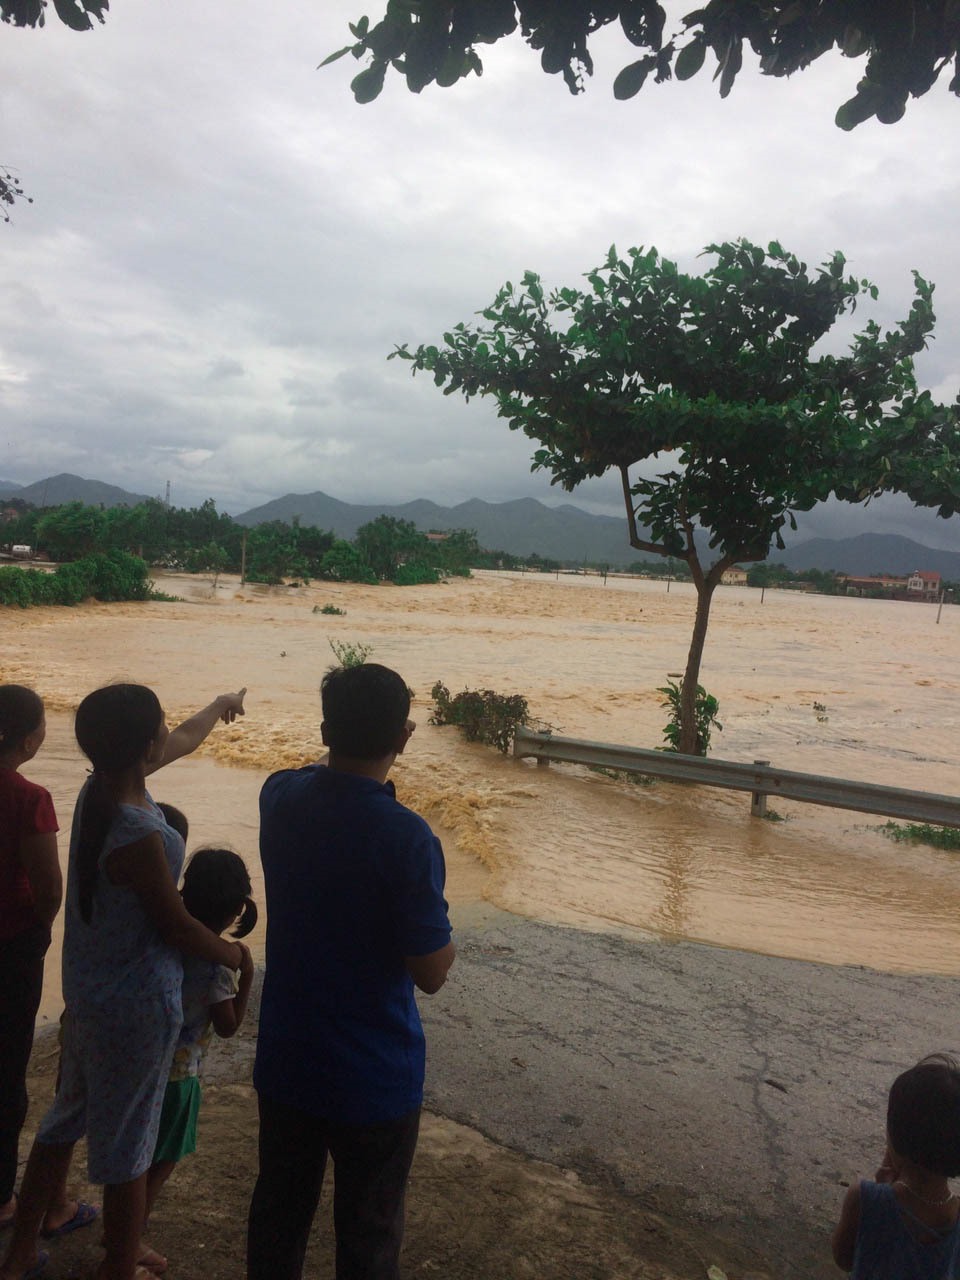 Ông Nguyễn Văn Mạnh, Chủ tịch huyện chiều nay cho biết: “Có 2 nơi bị ngập nặng nhất là xã Sơn Hùng và thị trấn Thanh Sơn. Nhiều phương tiện và tài sản của người dân đã bị lũ cuốn trôi, nhiều ô tô, xe máy bị ngập nước“.